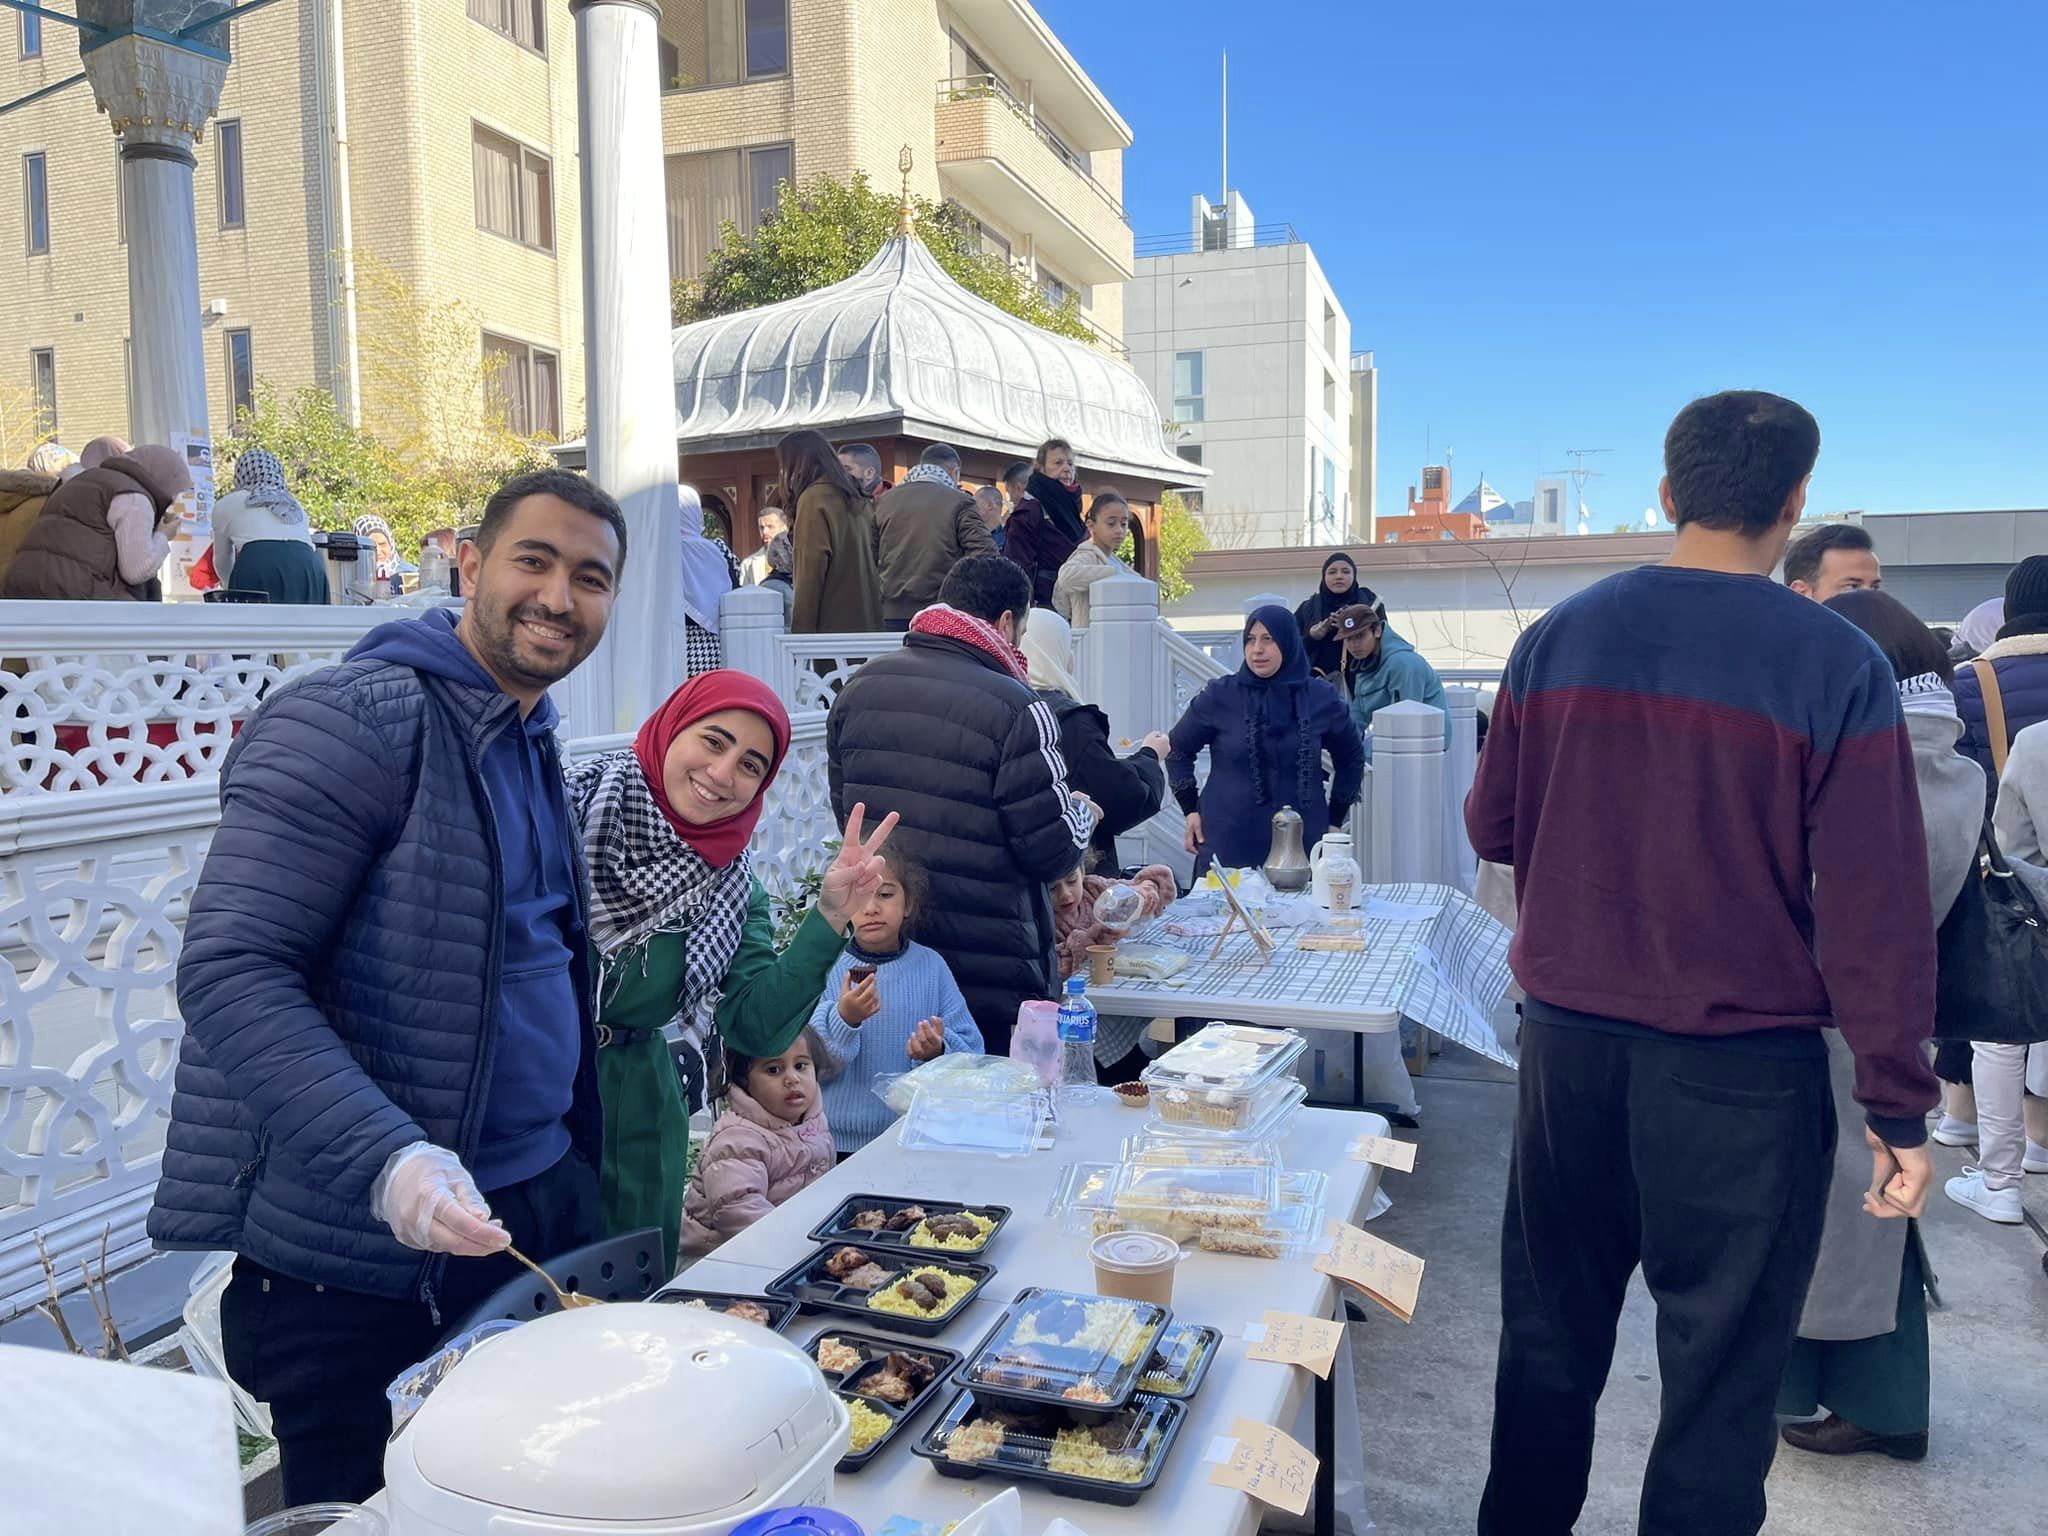 "يوم فلسطين الثاني" بازار خيري لدعم فلسطين نظمه المركز الاسلامي في اليابان بالتعاون مع مسجد طوكيو